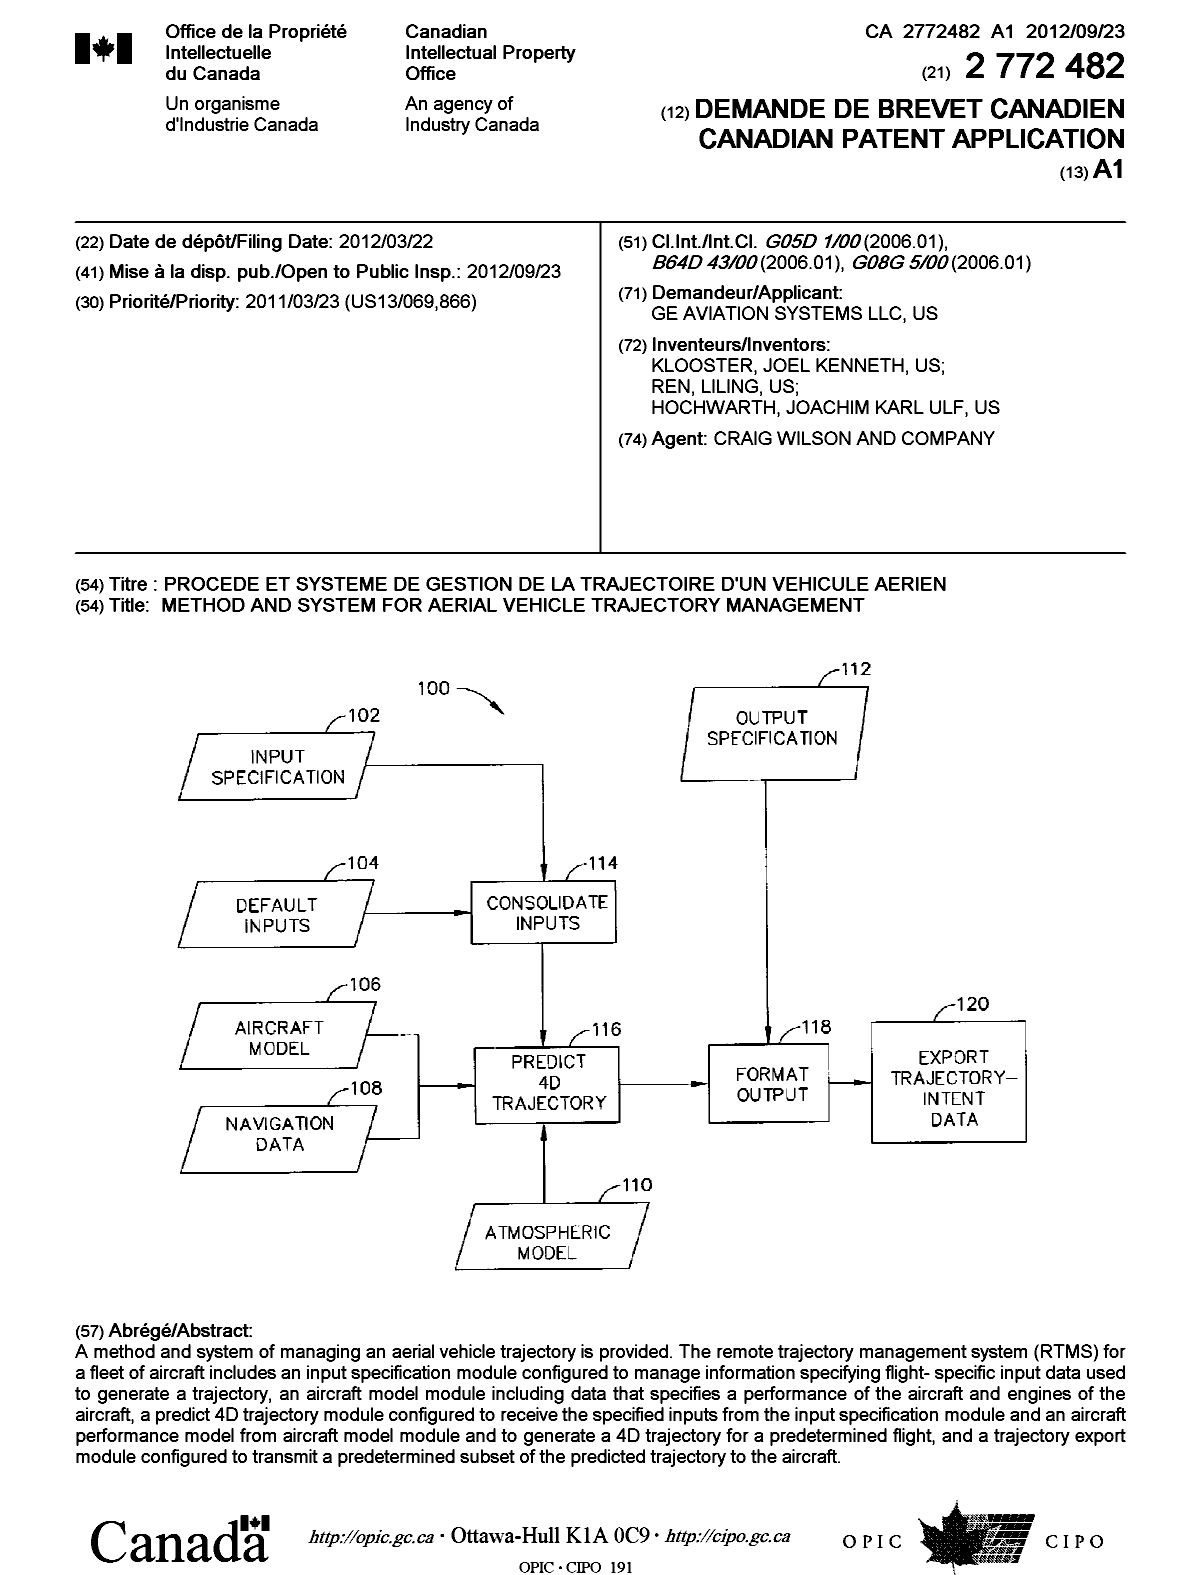 Document de brevet canadien 2772482. Page couverture 20121026. Image 1 de 1